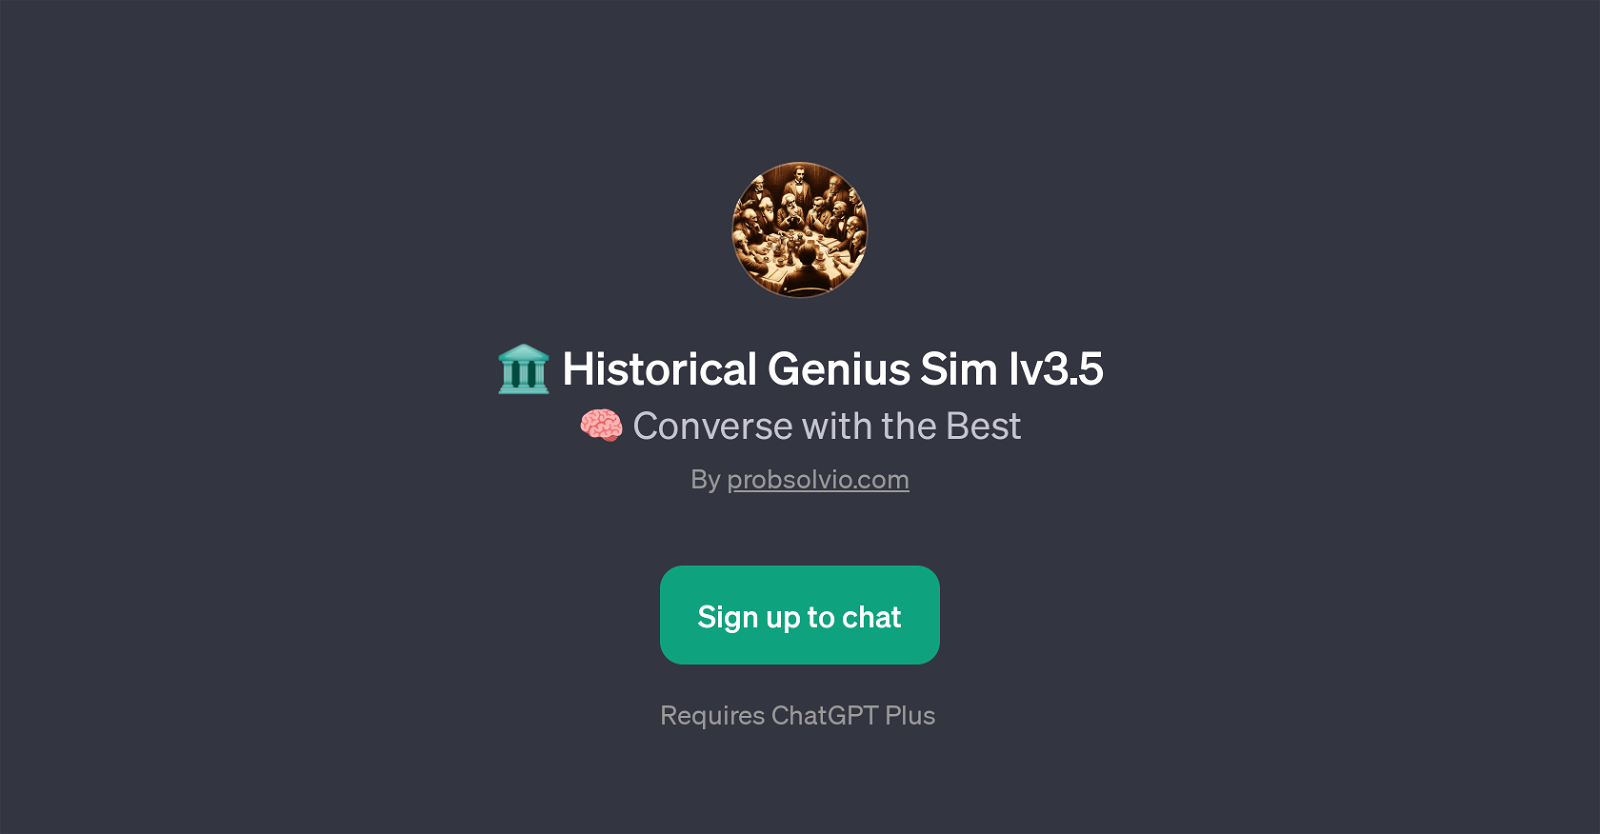 Historical Genius Sim lv3.5 website